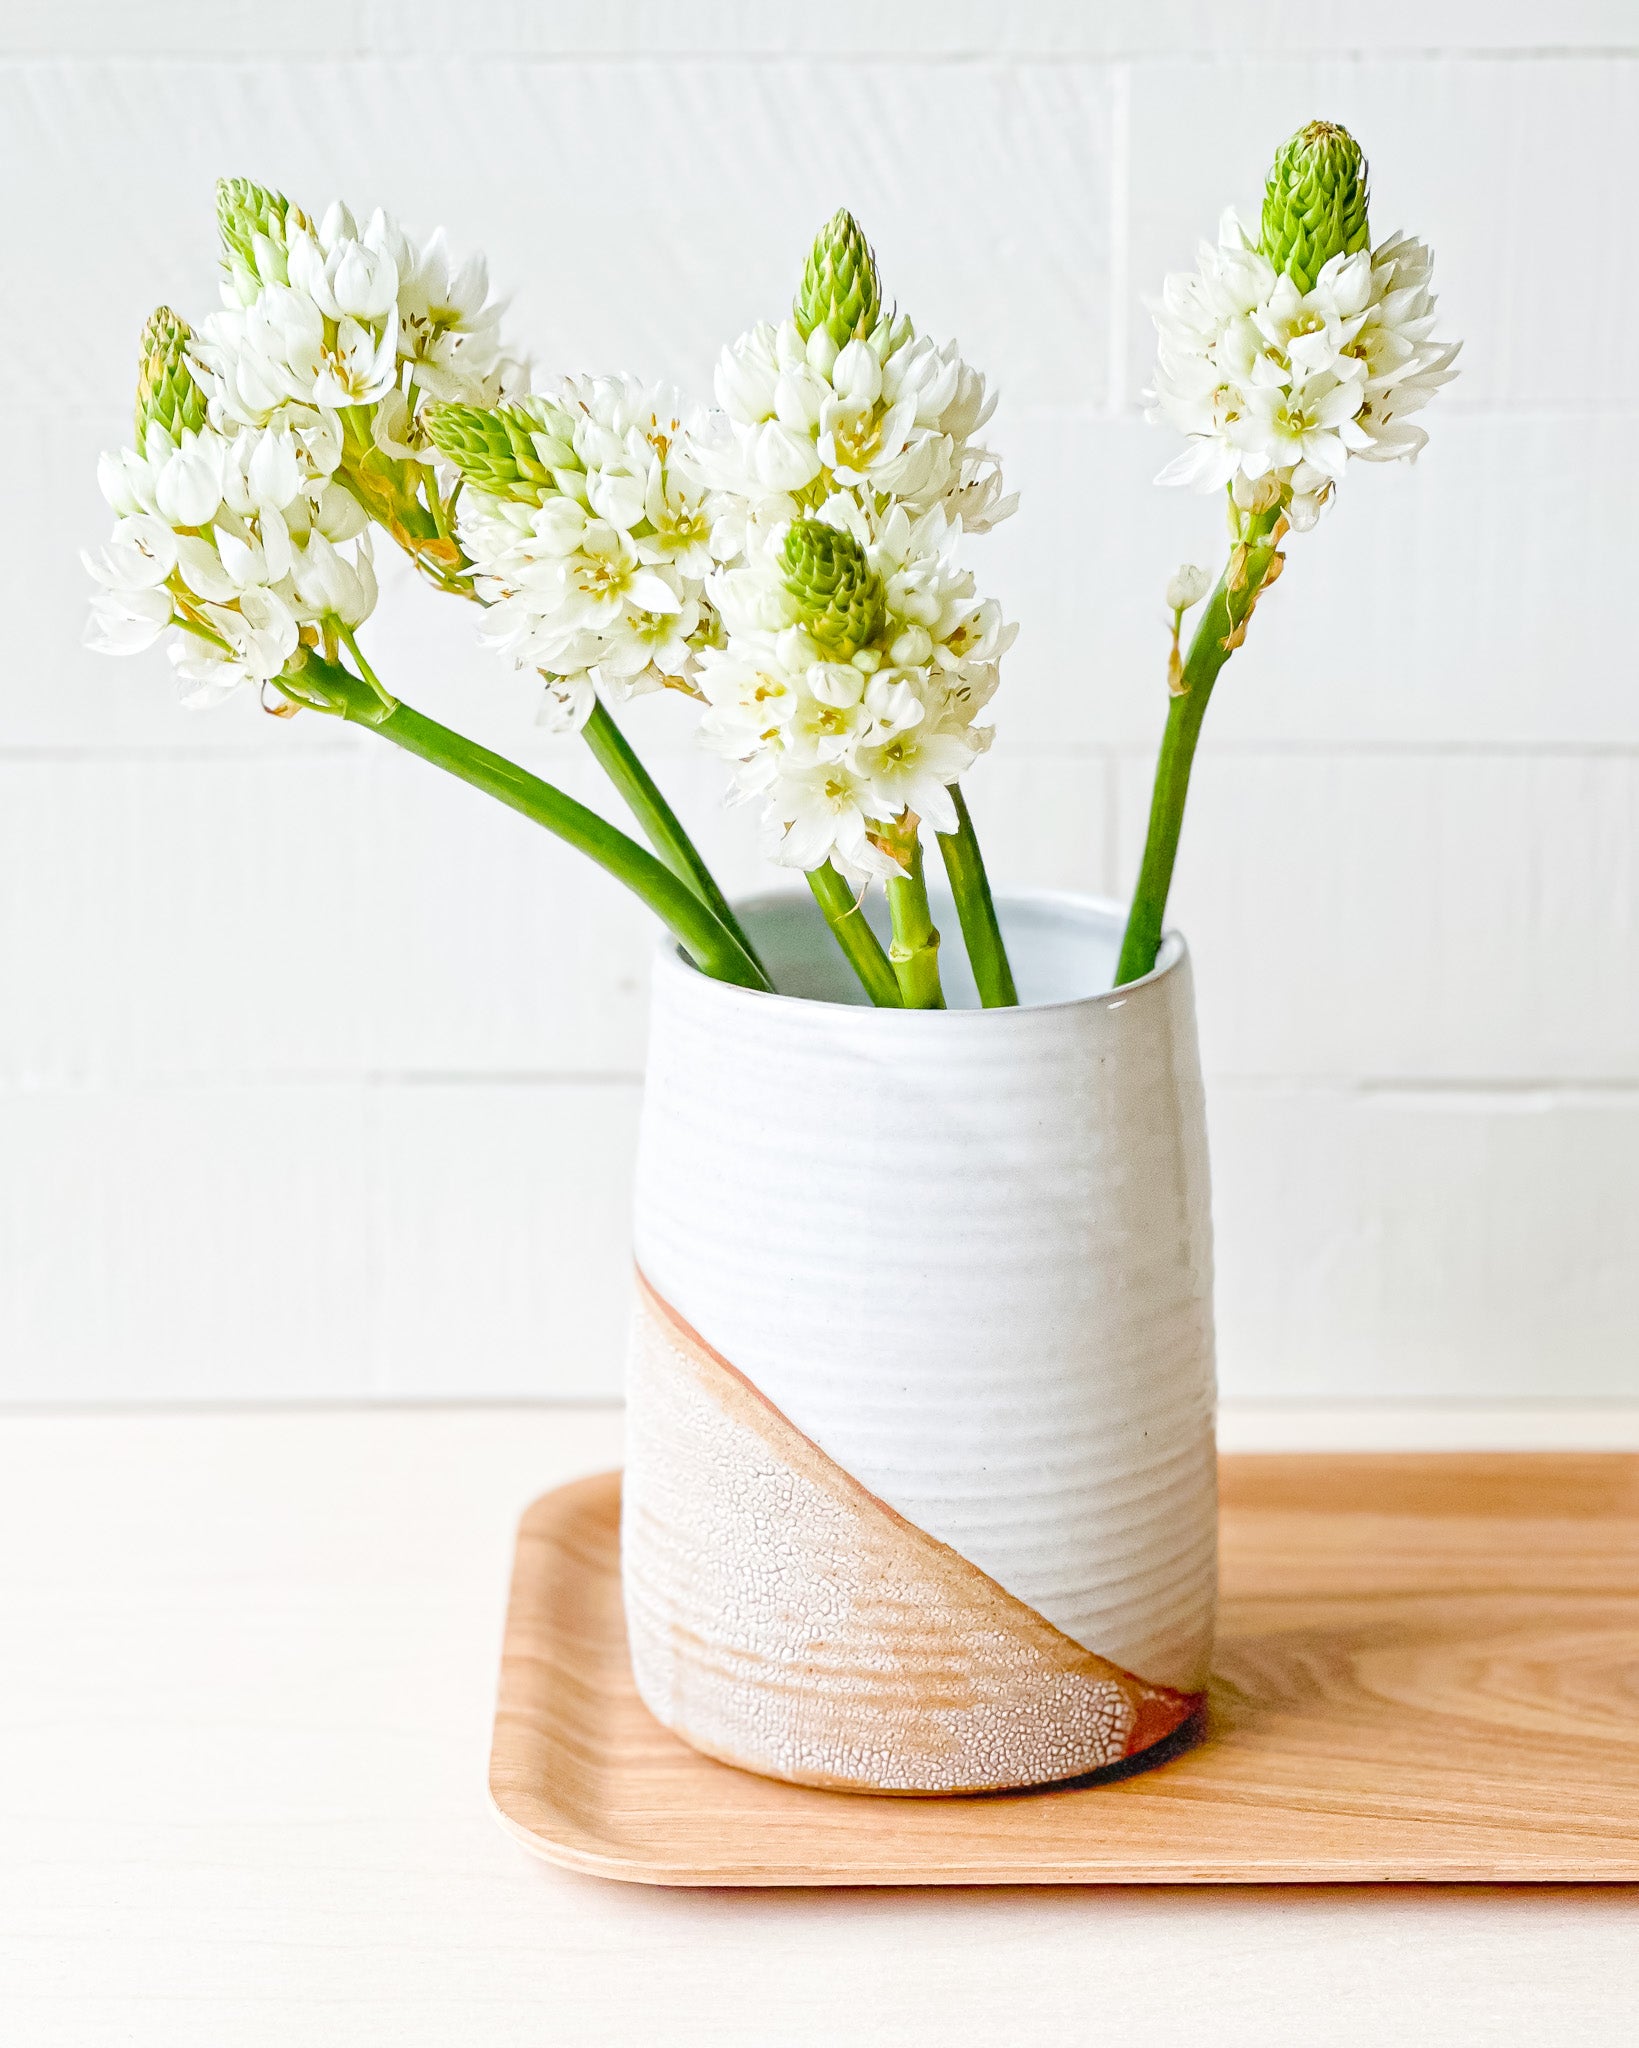 Modern Vase // Gloss White + Textured Crackle